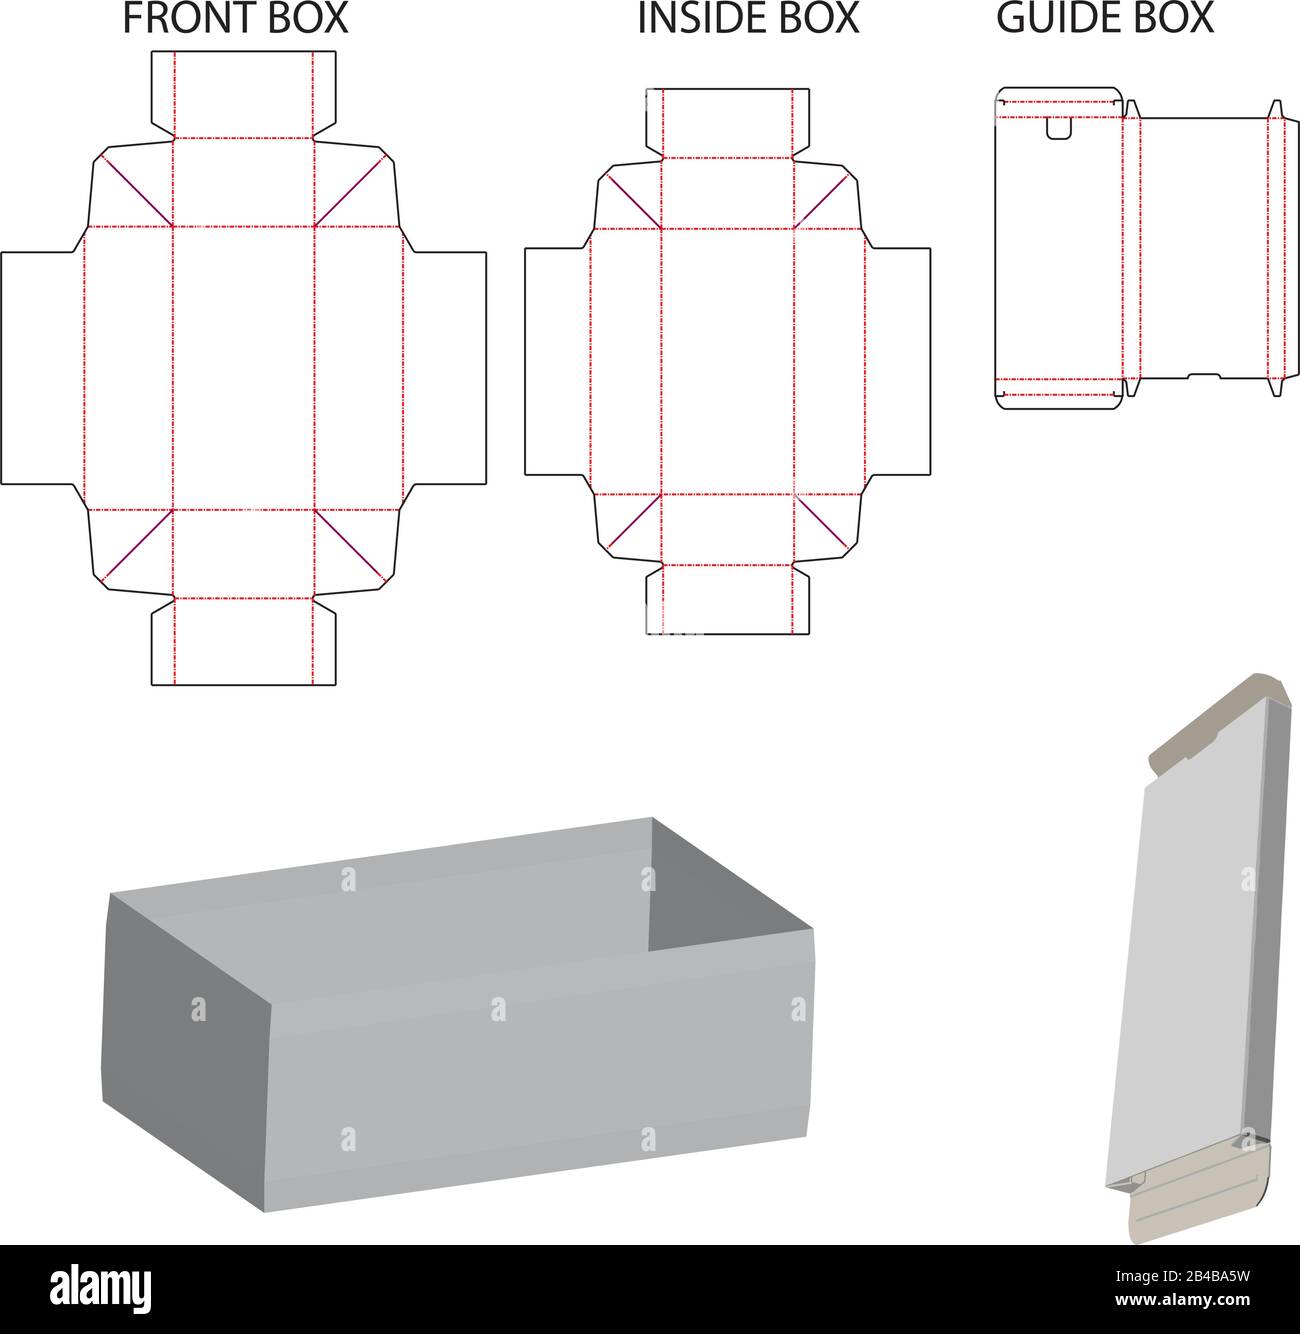 Scatola fustella per smartphone - con scatola guida Immagine e Vettoriale -  Alamy